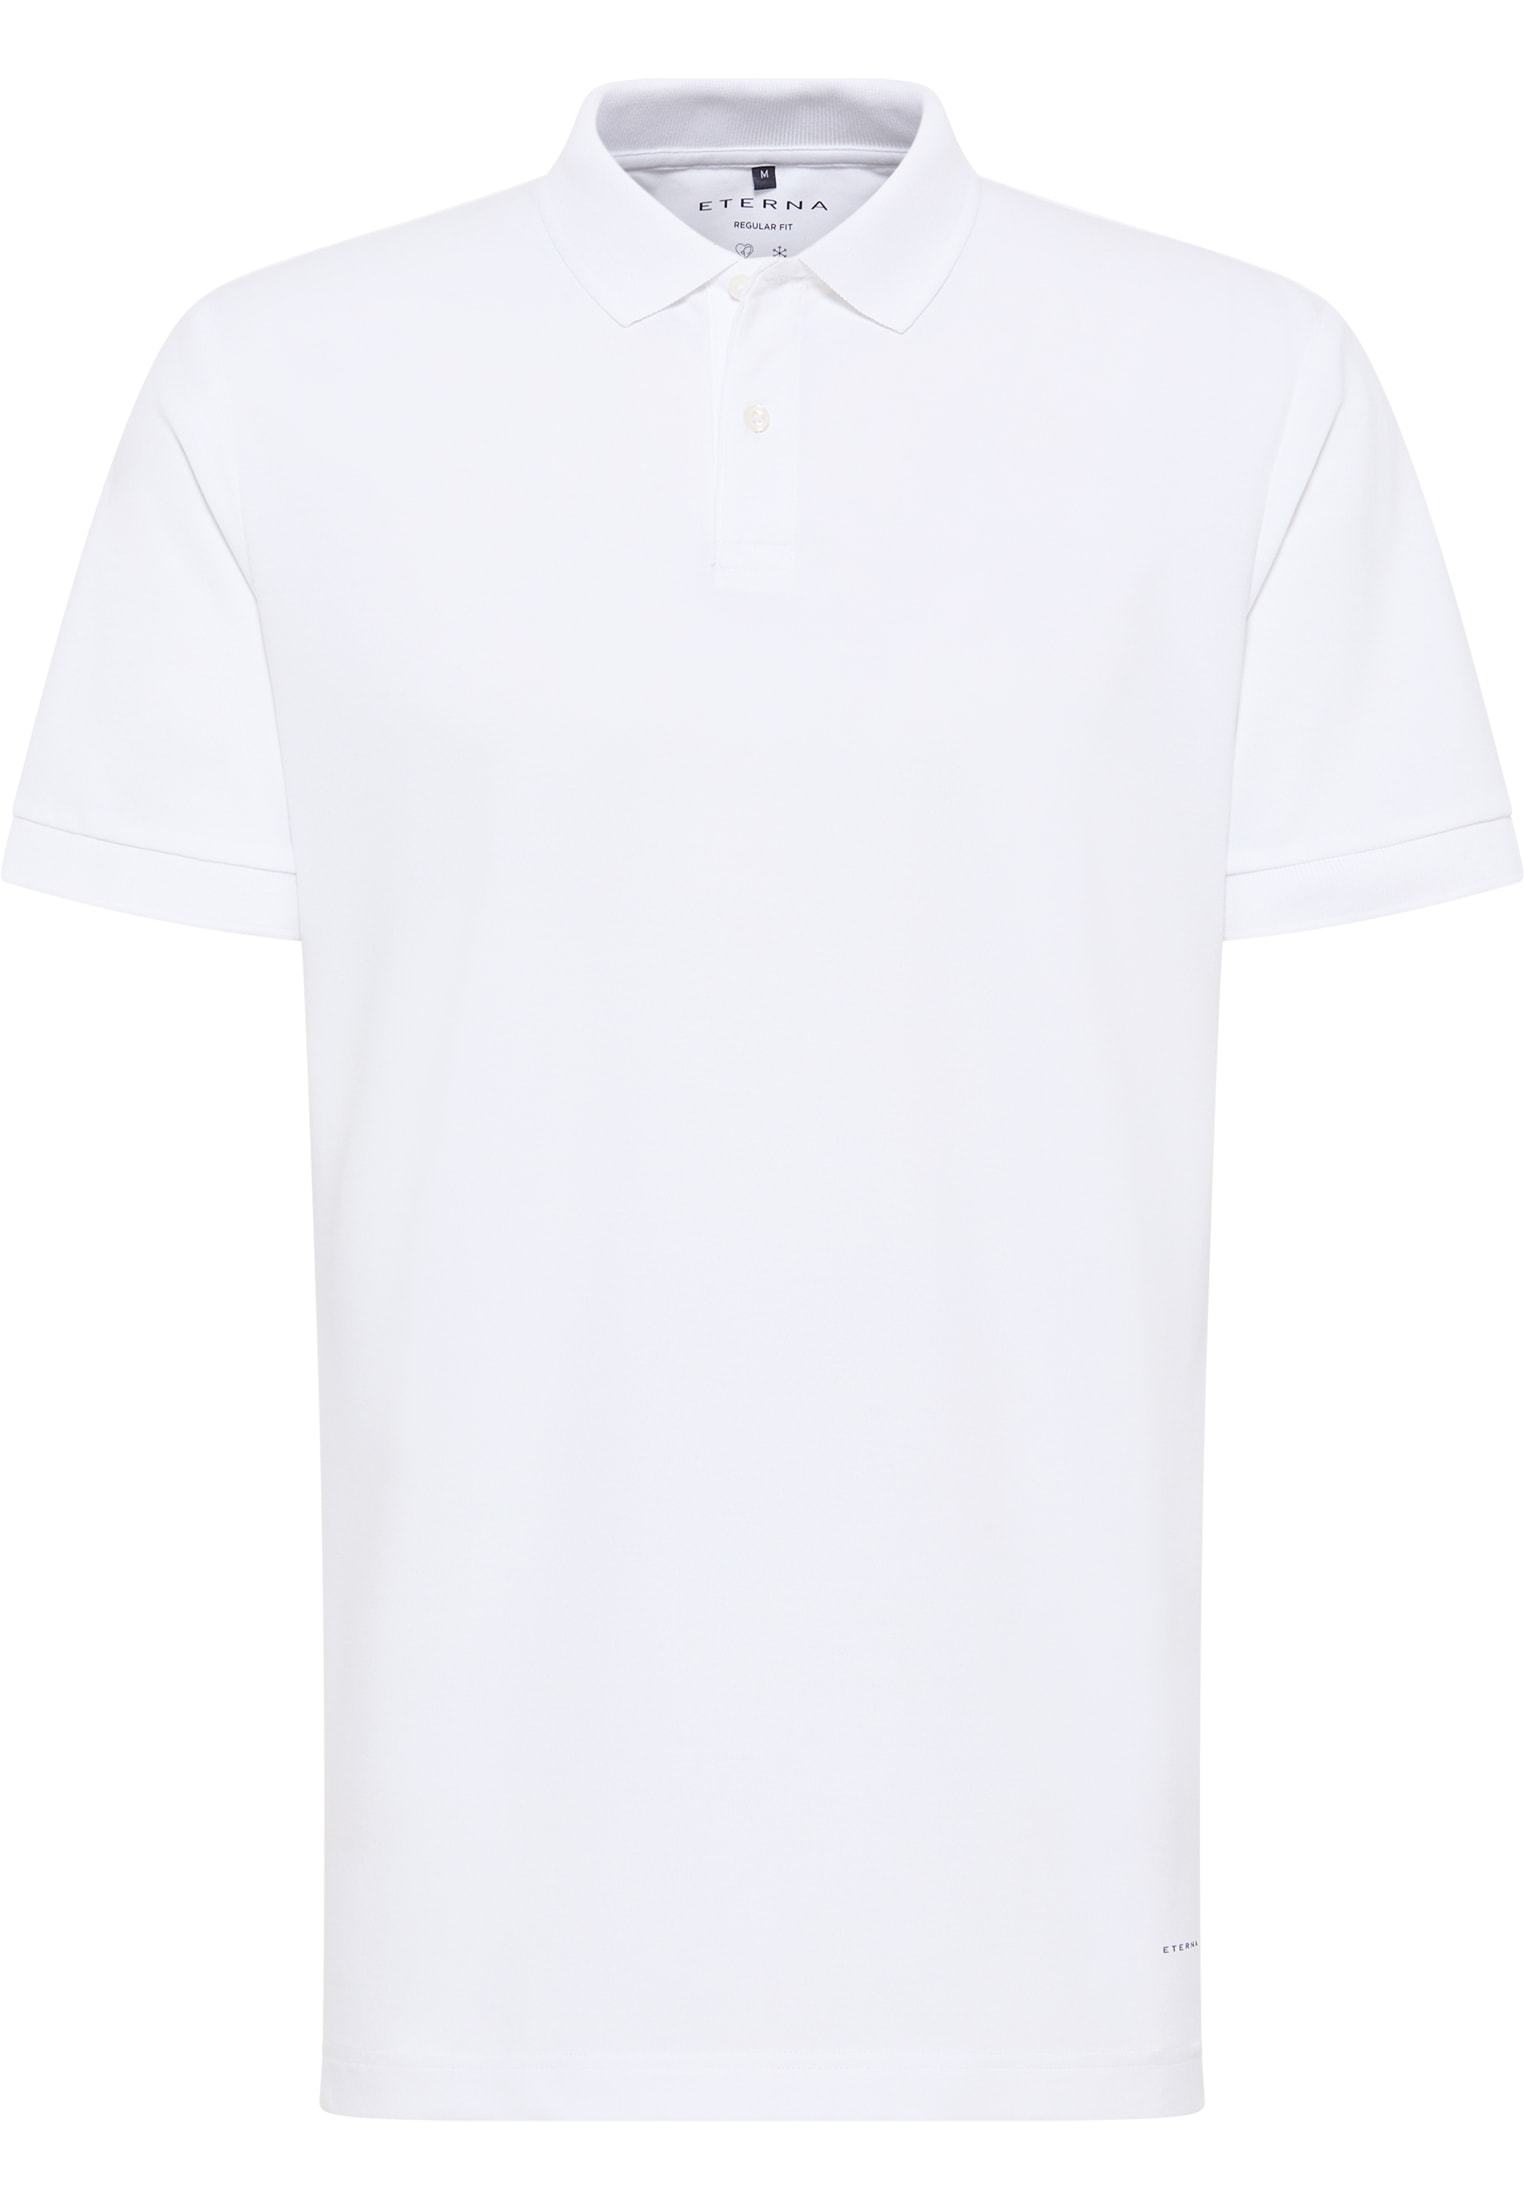 REGULAR FIT Polo shirt in white plain